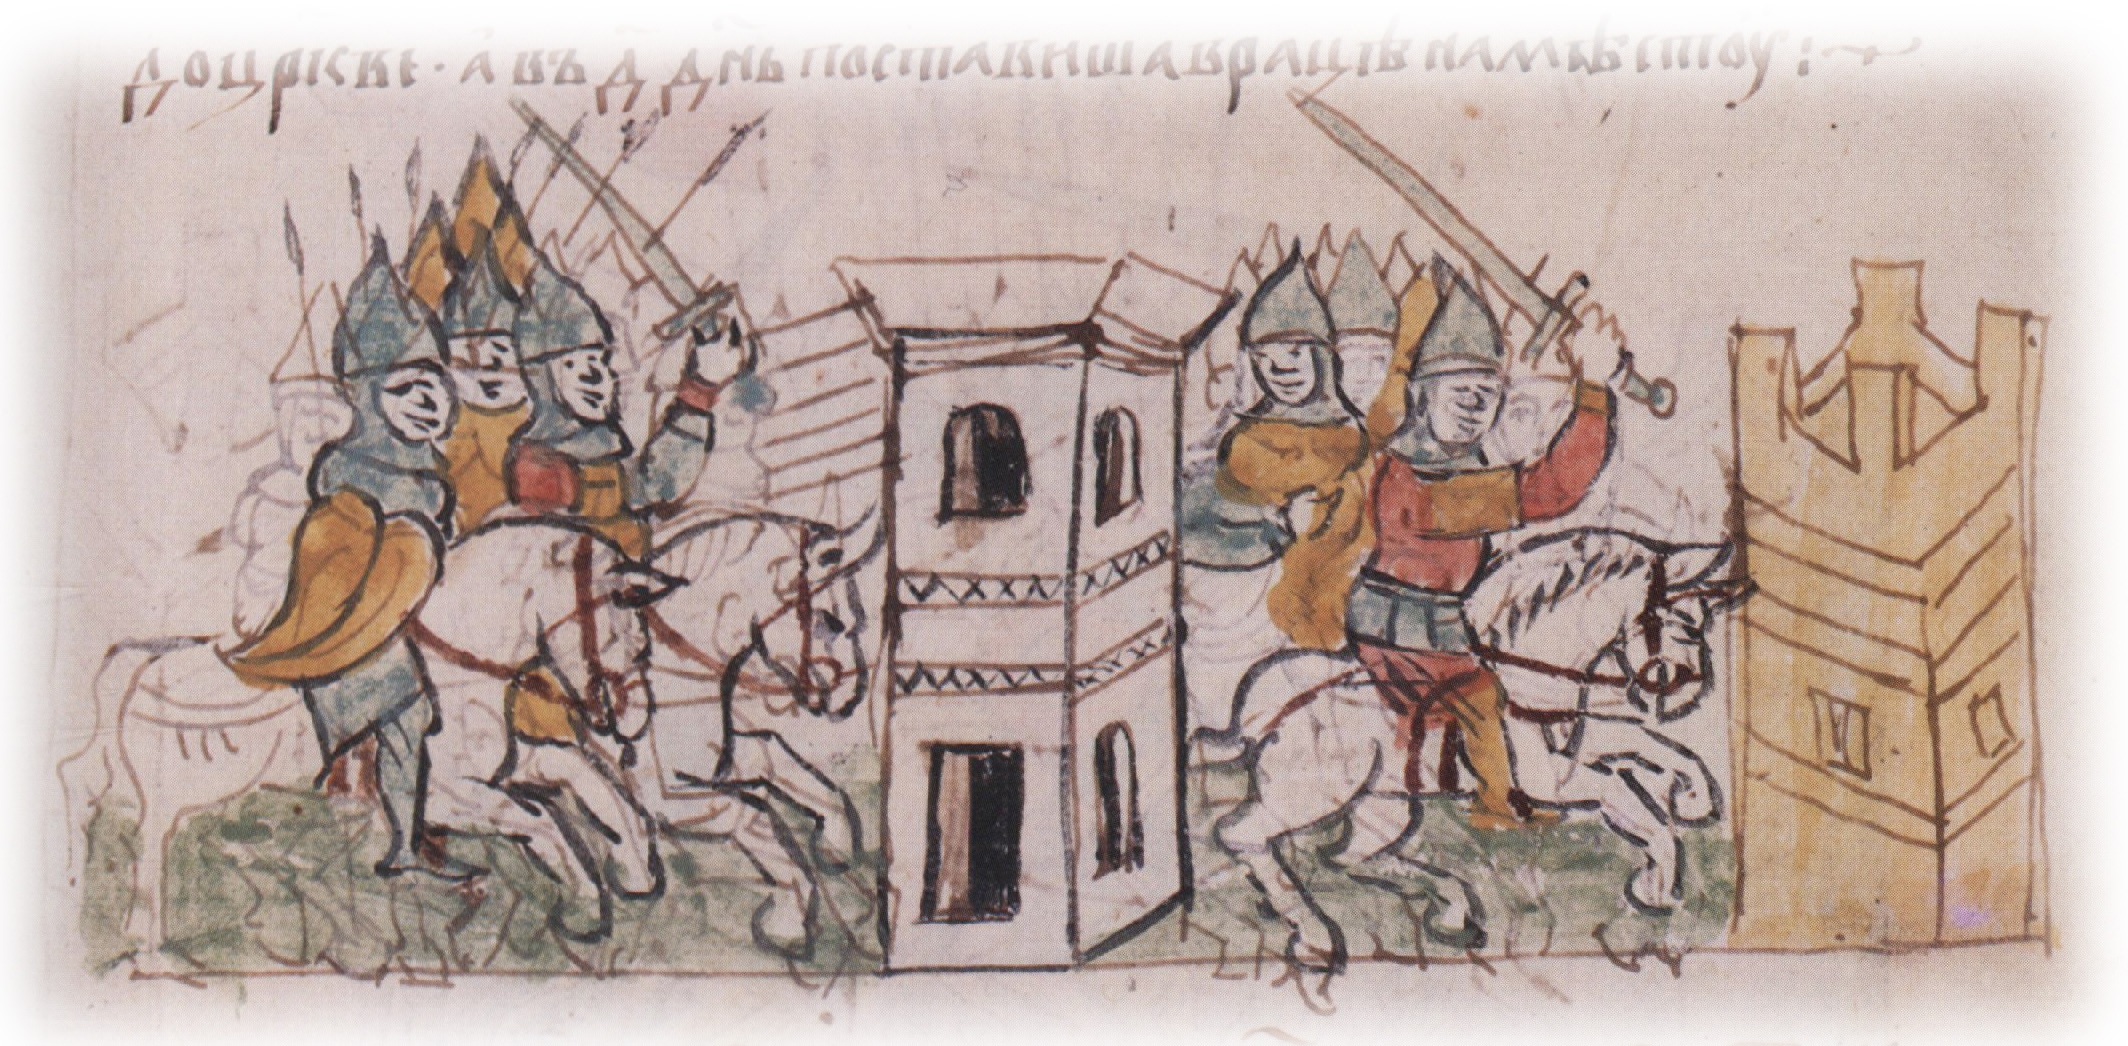 Битва на реке альте 1068 Радзивиловская летопись